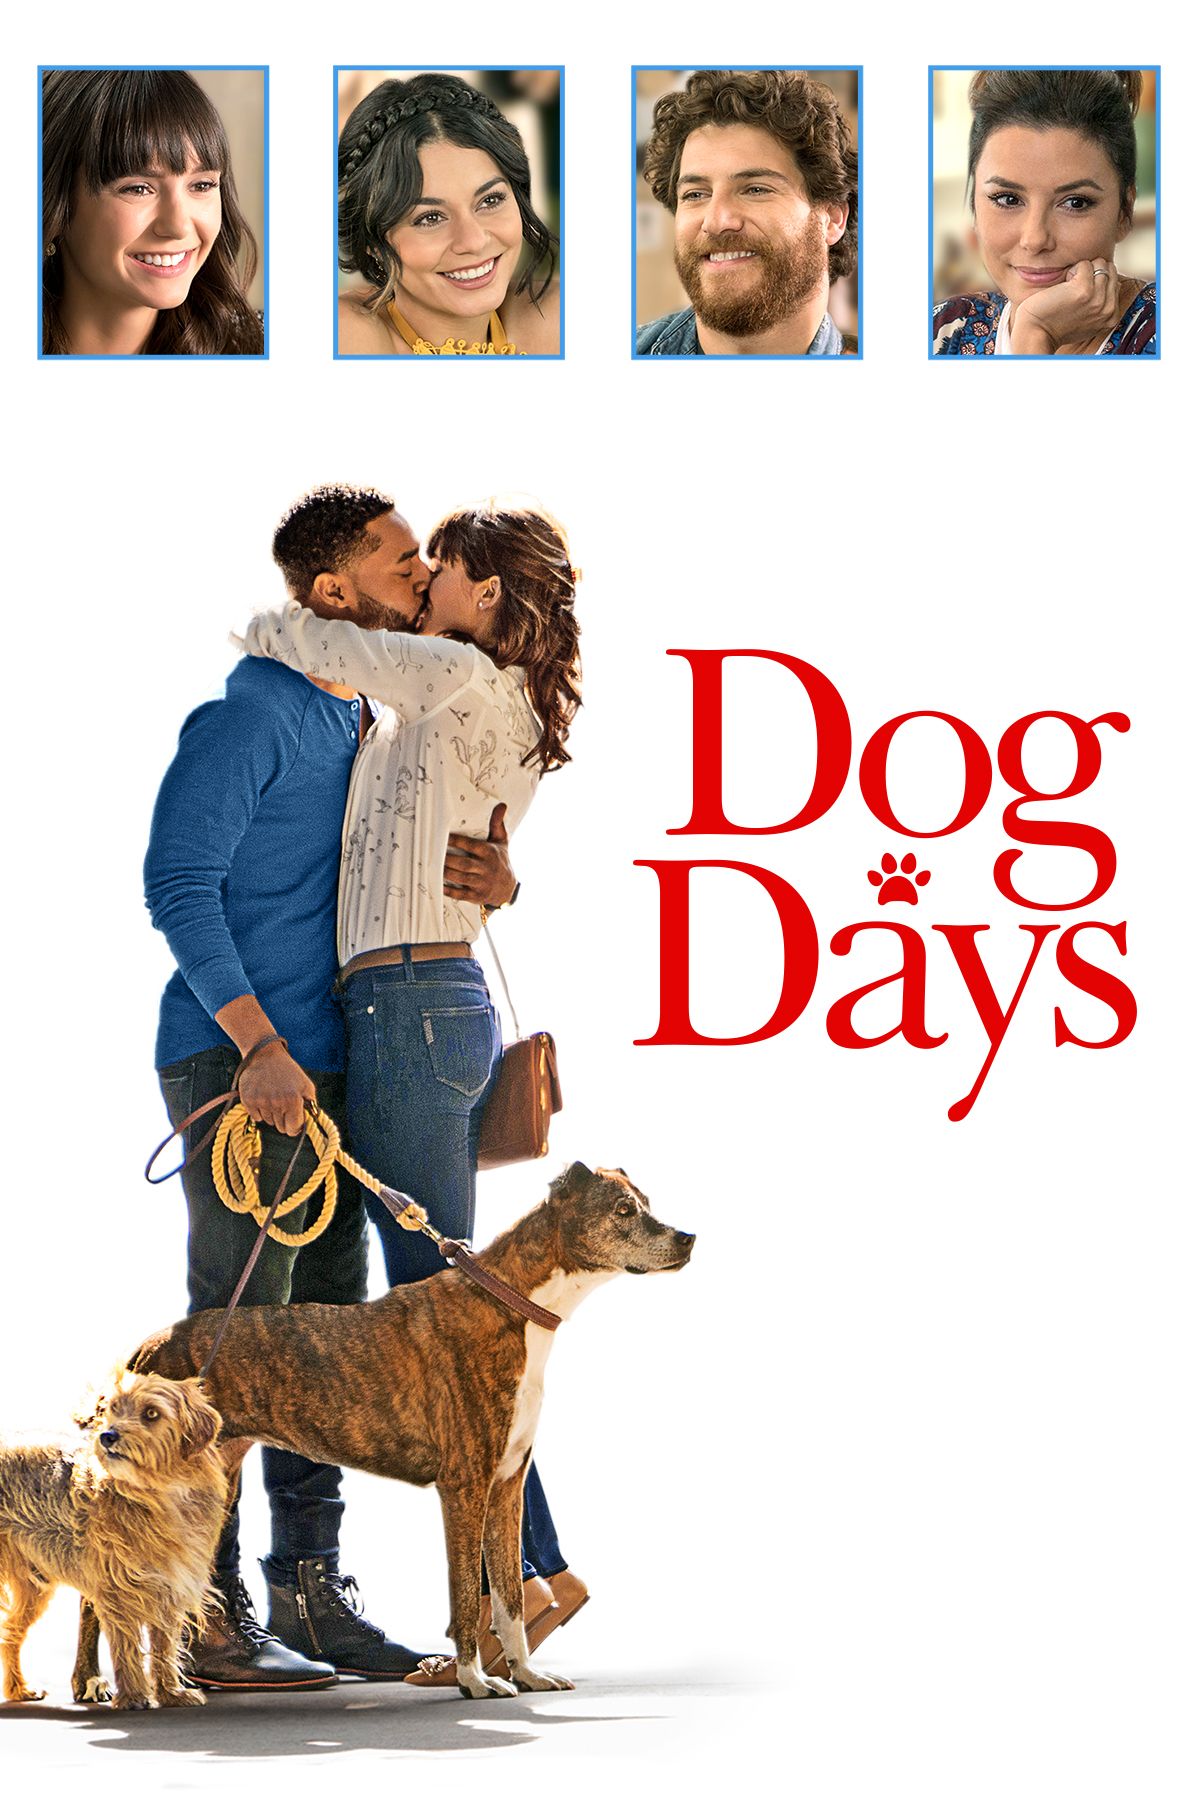 🎥 DOG DAYS (2018), Full Movie Trailer in Full HD